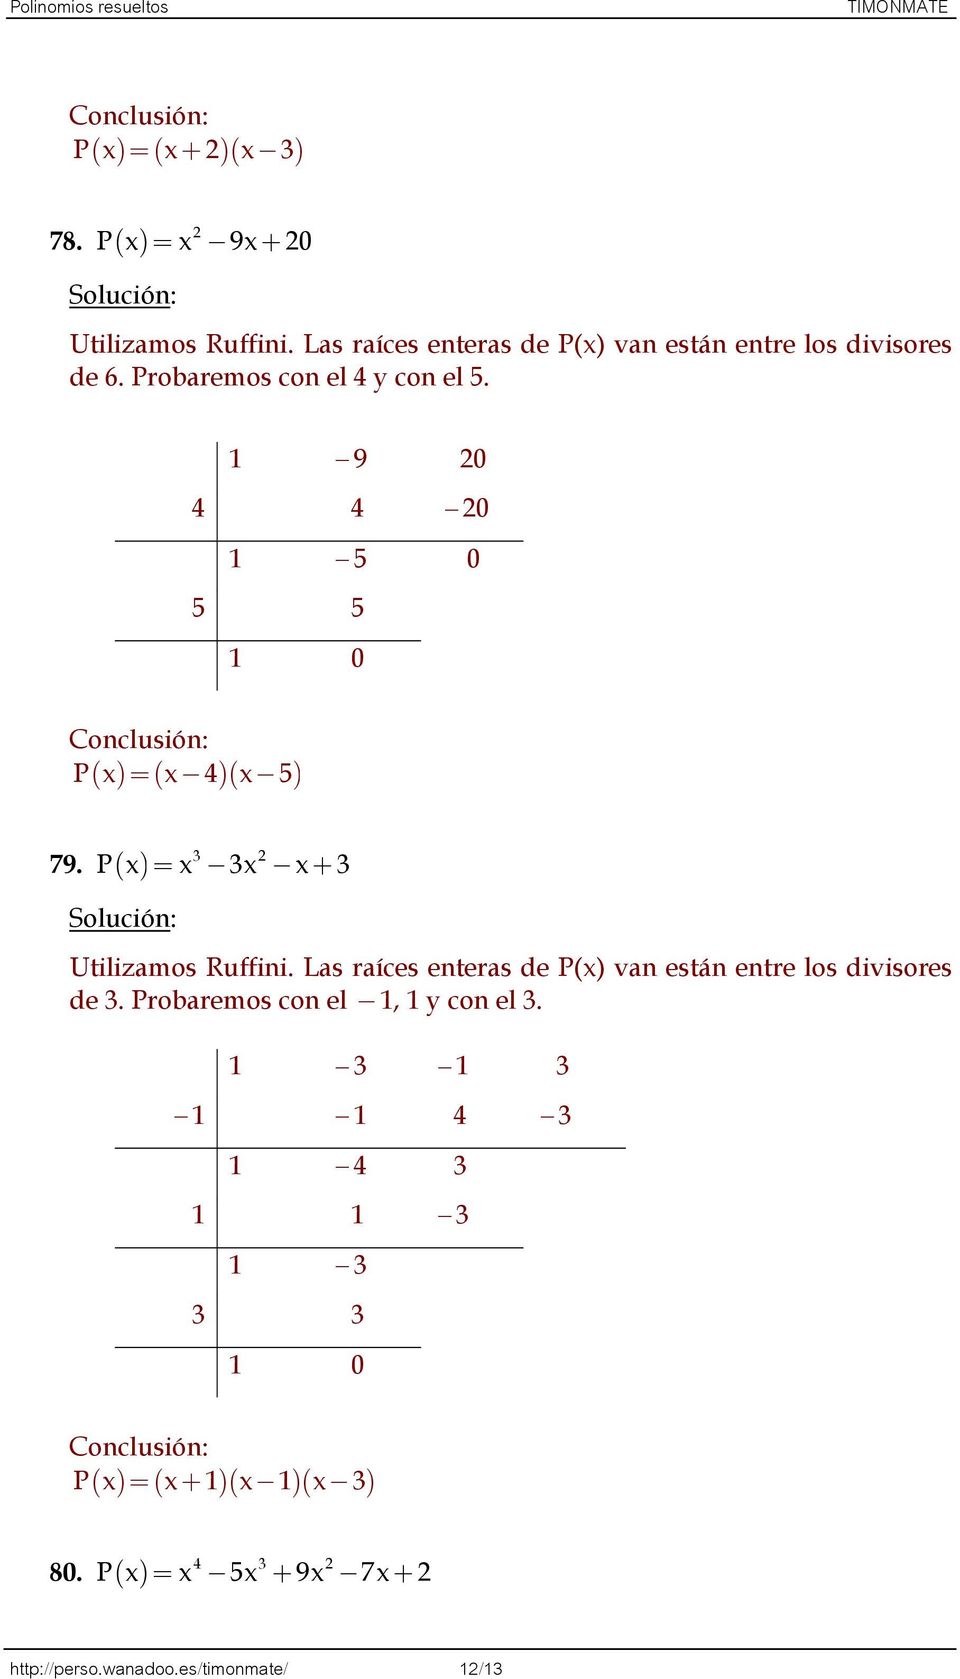 9 0 4 4 0 5 0 5 5 0 Conclusión: P ( ) ( -4)( - 5) 3 79. P ( ) -3- + 3 Utilizamos Ruffini.